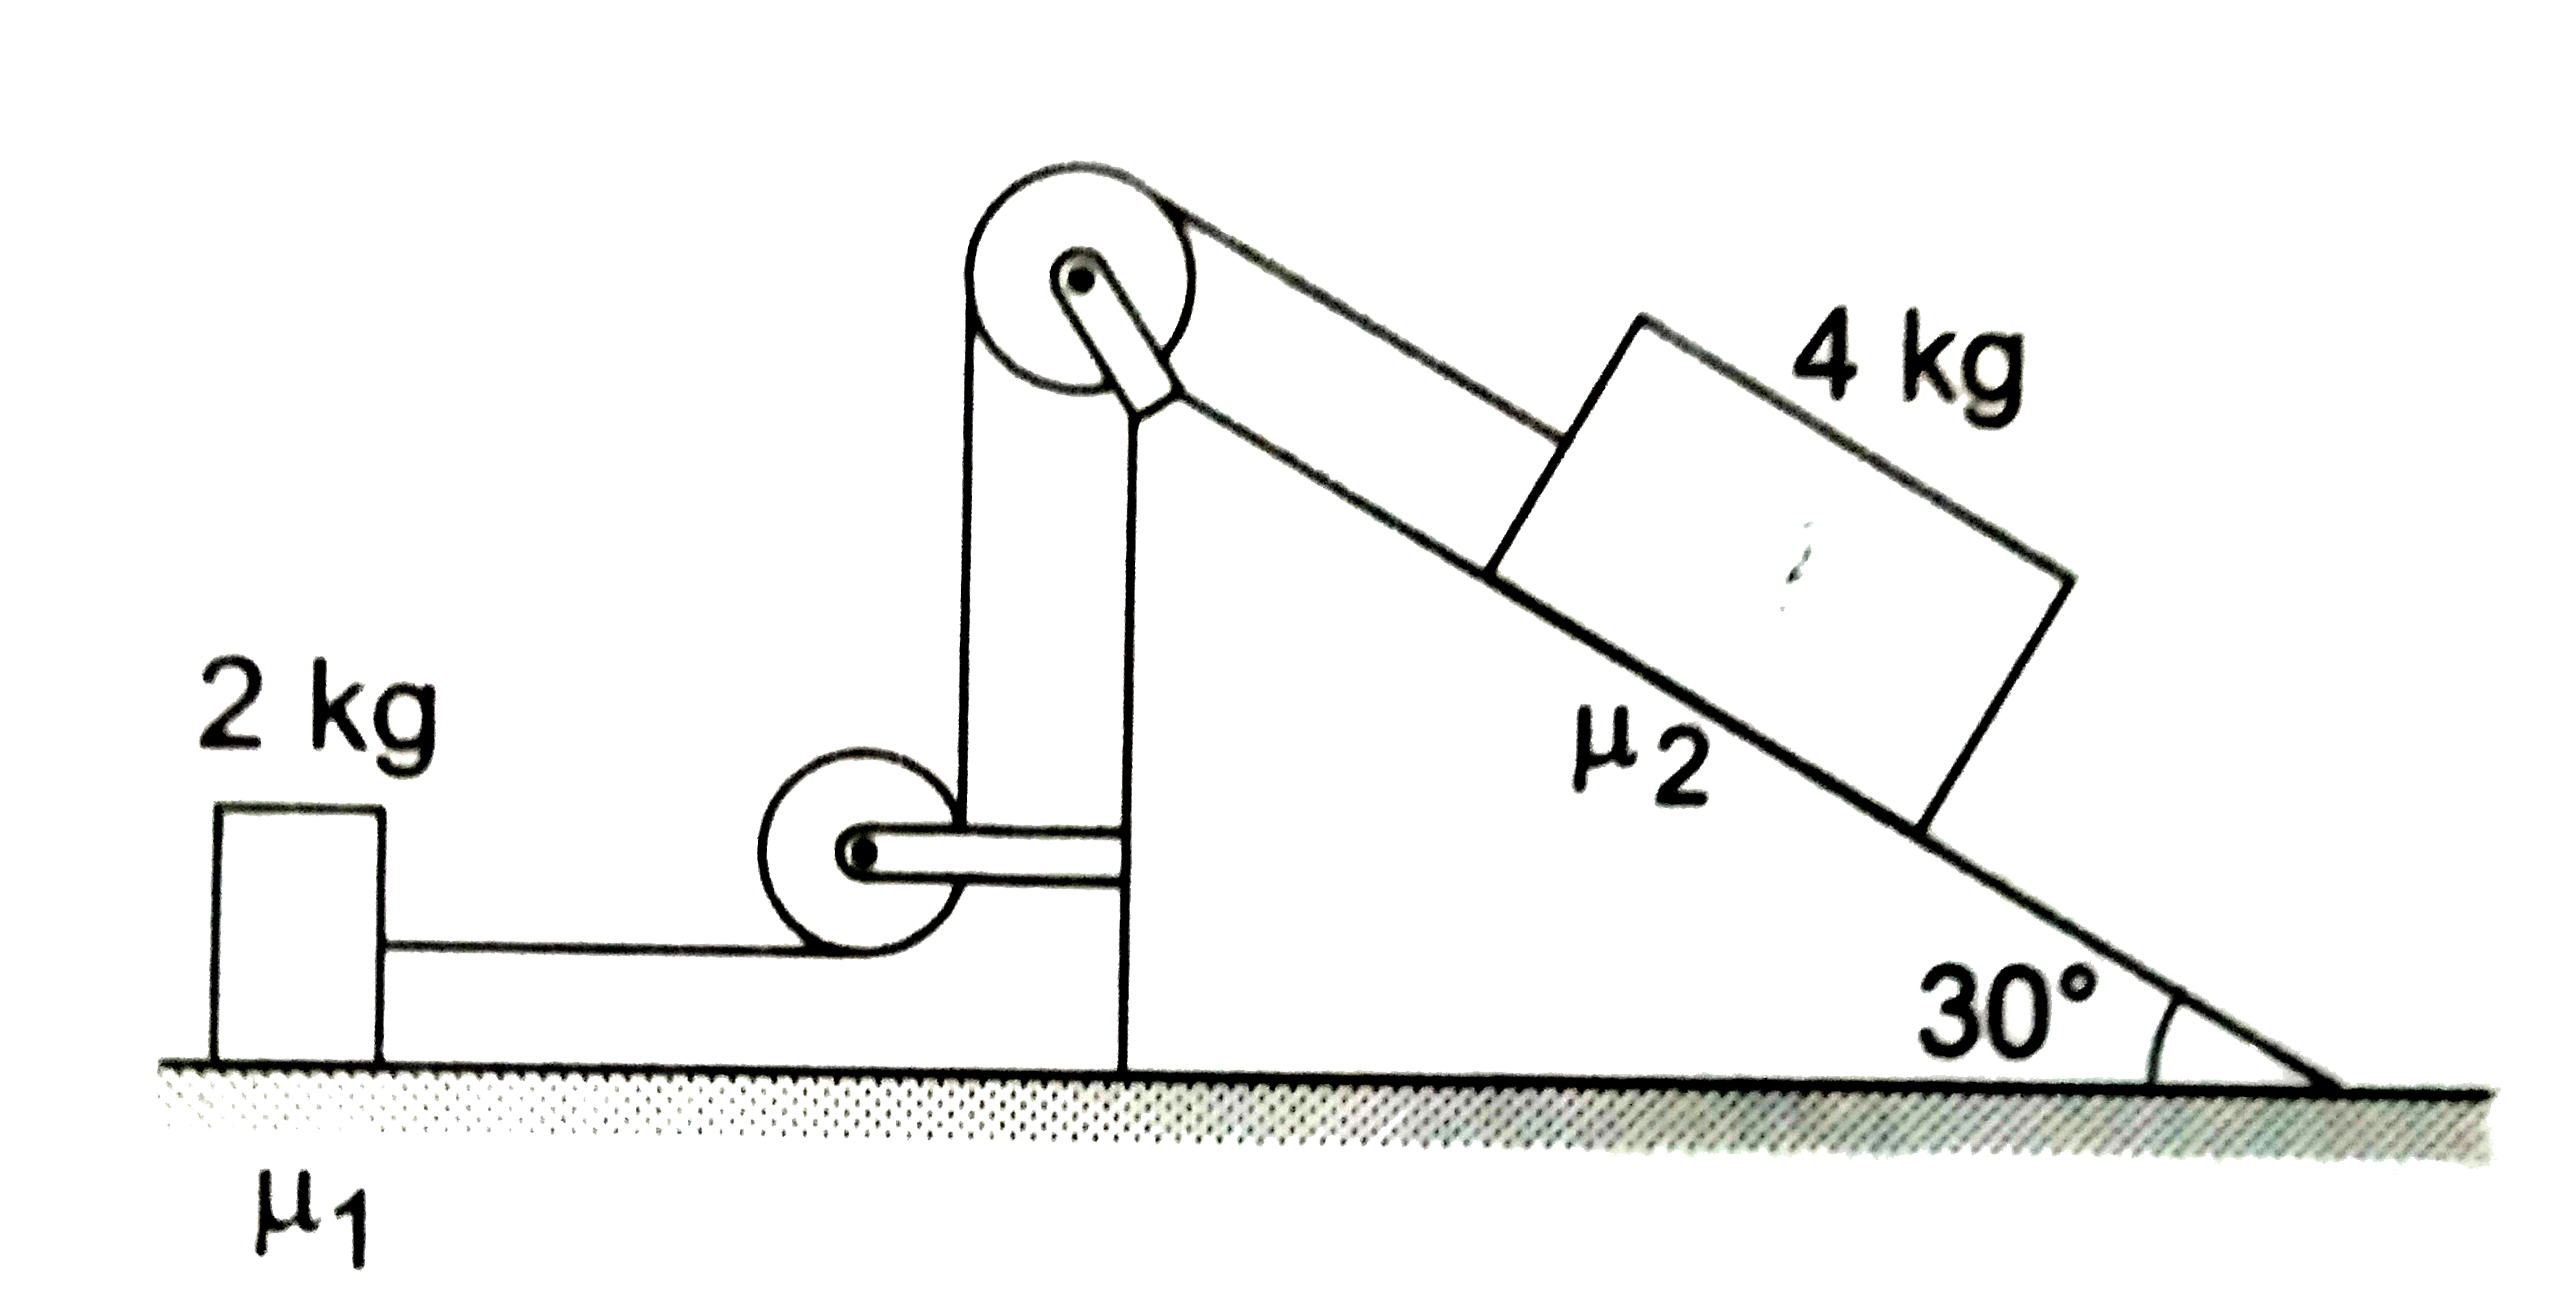 चित्र में डोरी का तनाव 16  न्यूटन है तथा प्रत्येक गुटके का त्वरण  0.5m//s^(2)   है| गुटकों तथा उनके नीचे की सतहों के बीच घर्षण गुणांक ज्ञात करें|